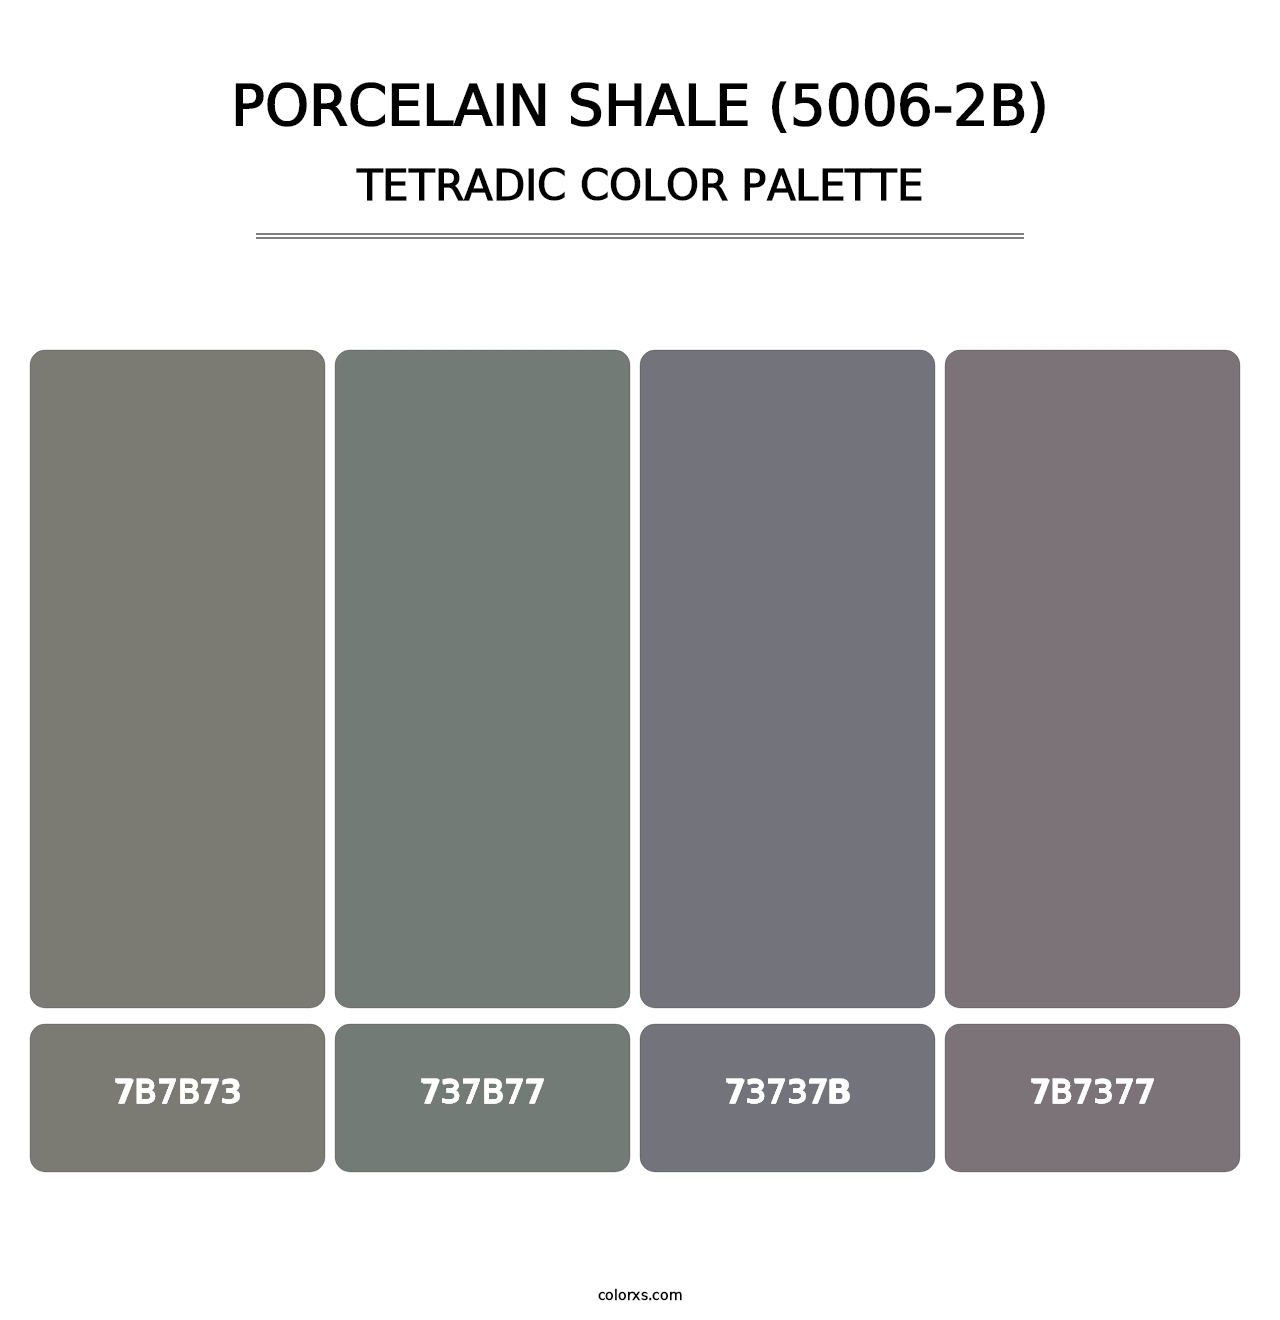 Porcelain Shale (5006-2B) - Tetradic Color Palette